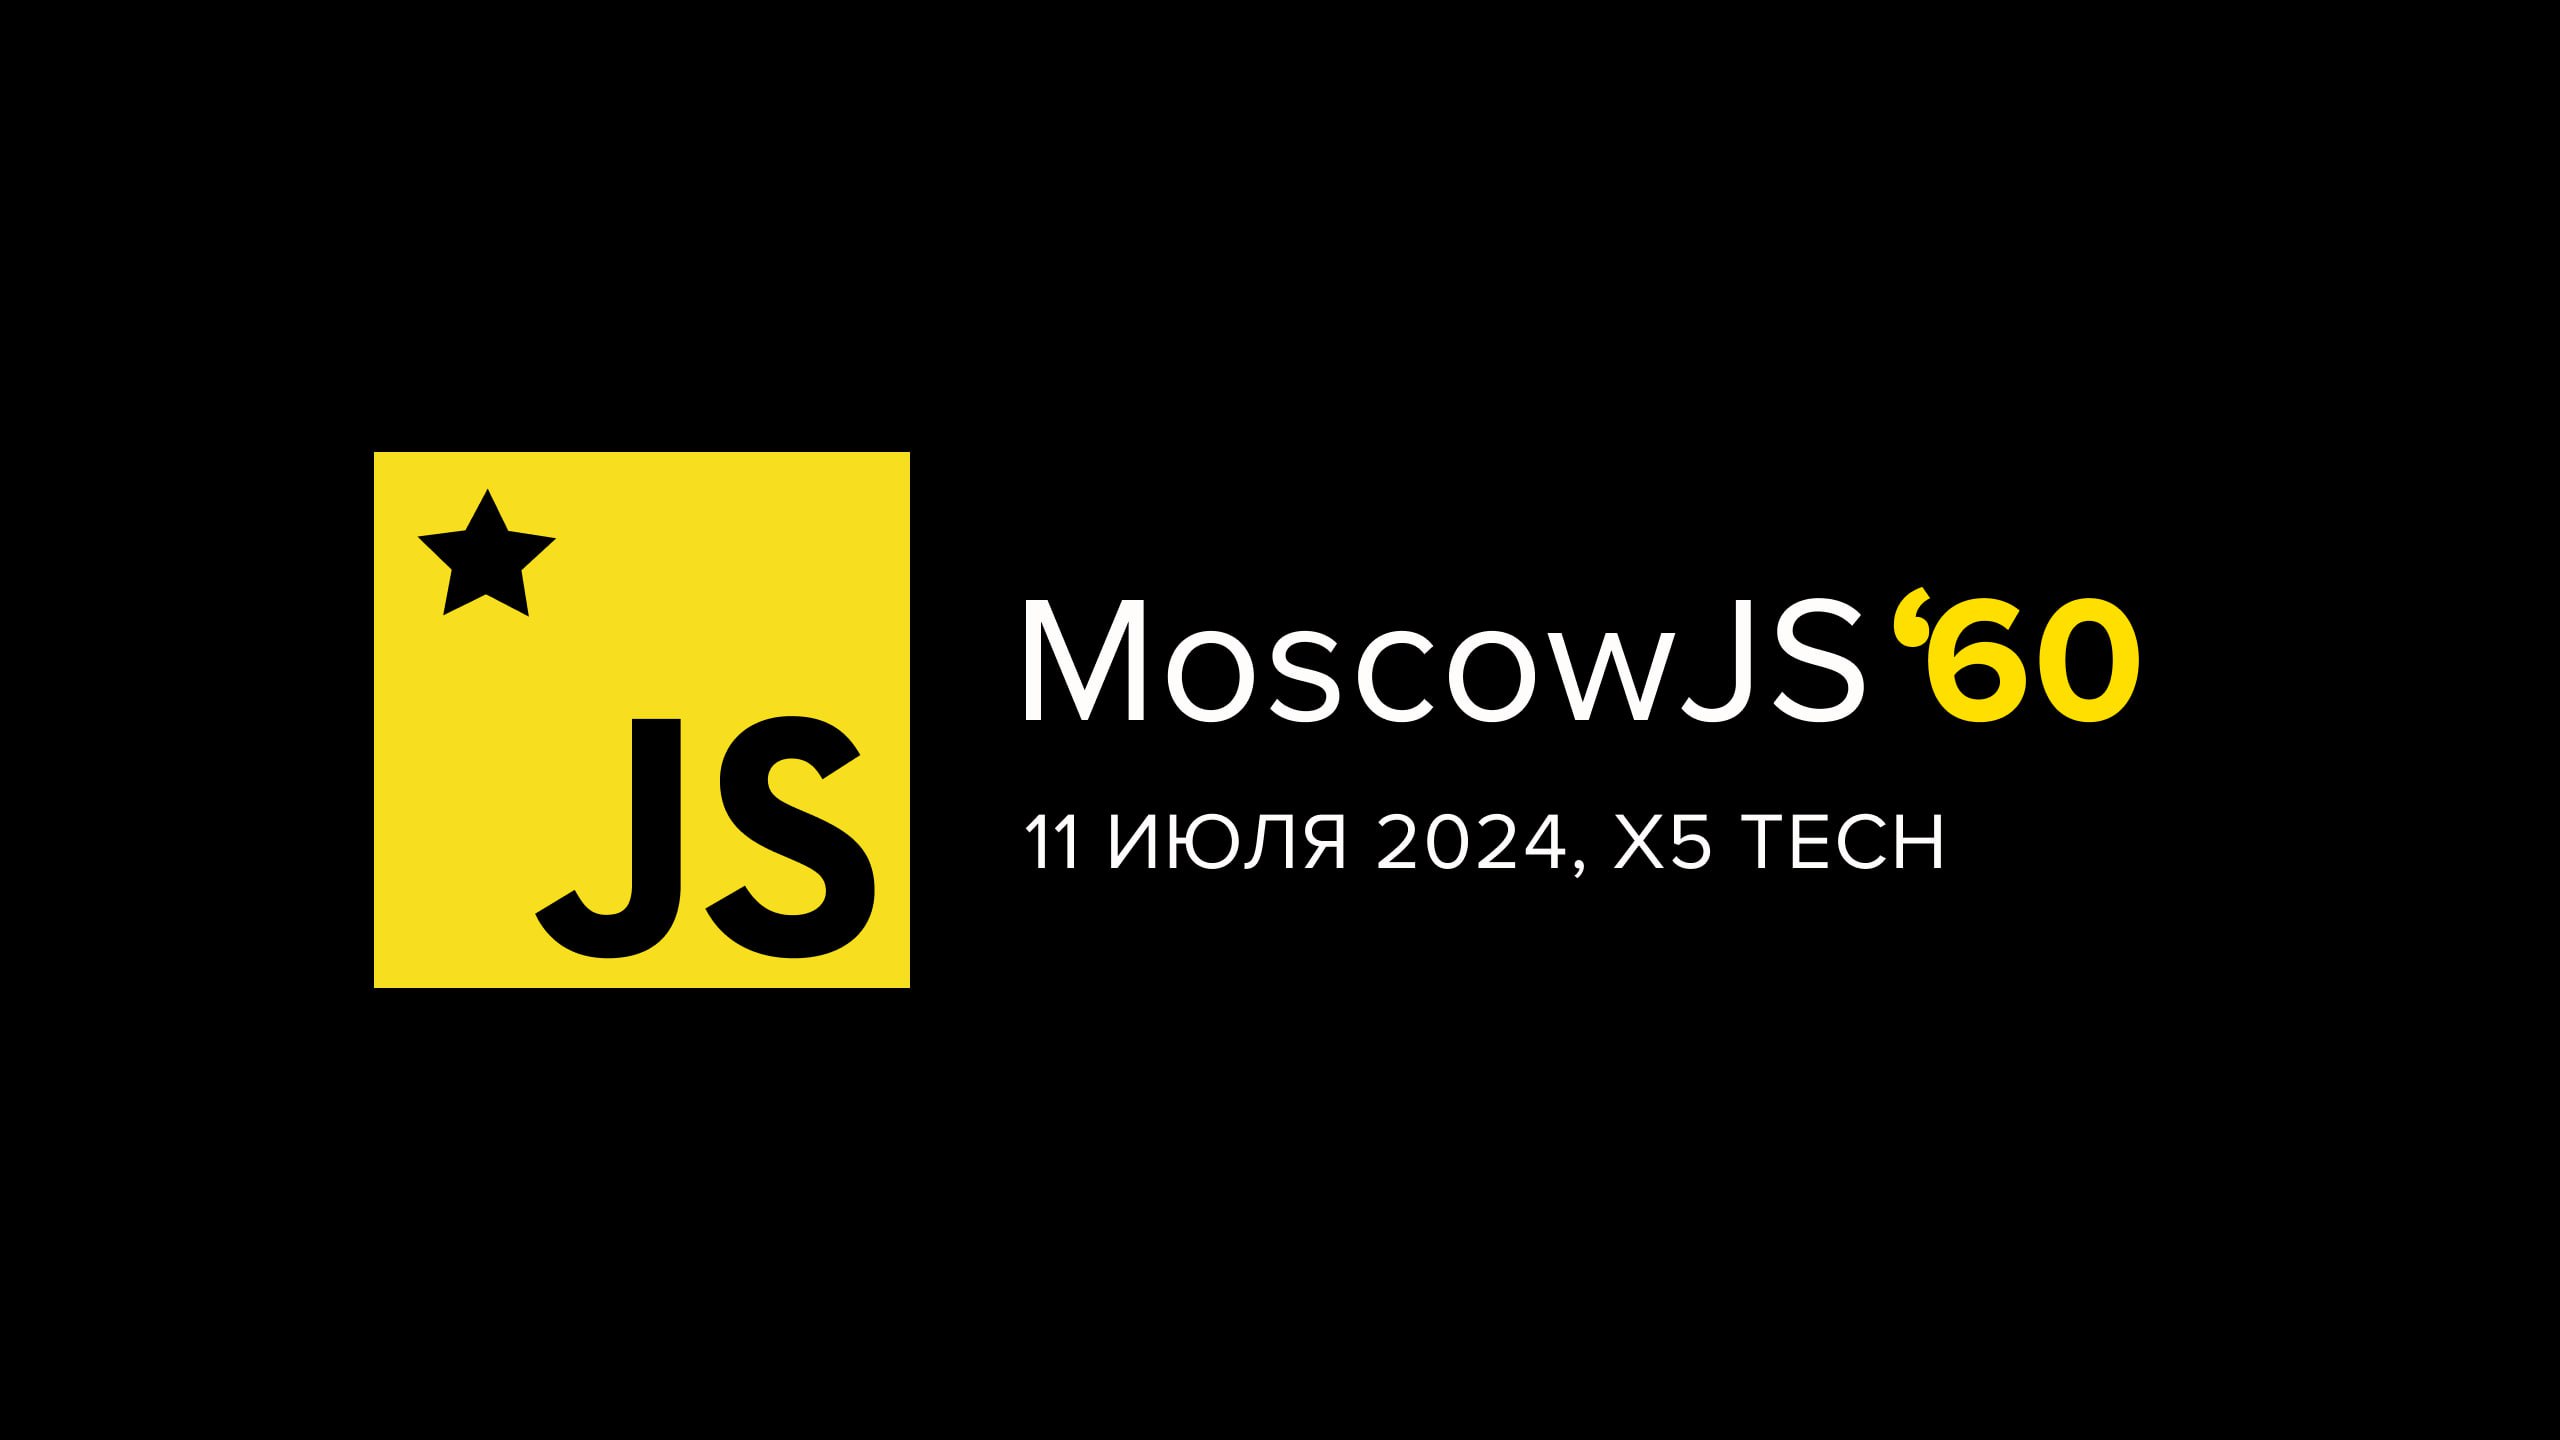 Обложка мероприятия MoscowJS 60 + X5 Tech